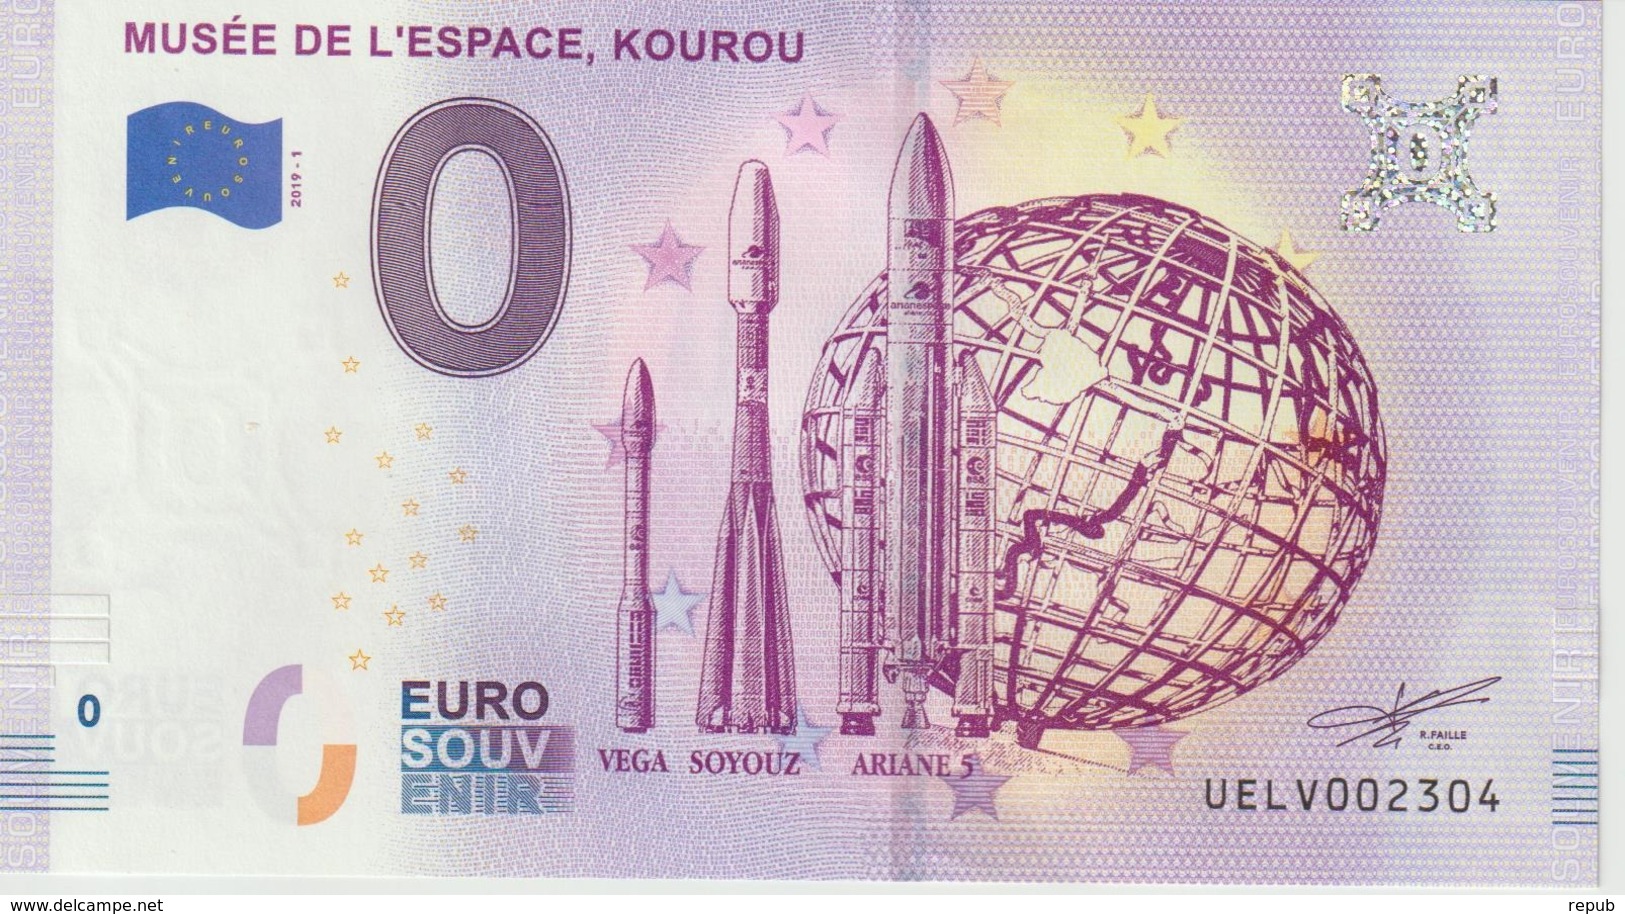 Billet Touristique 0 Euro Souvenir France Guyane Musée De L'Espace Kourou 2019-1 N°UELV002304 - Essais Privés / Non-officiels